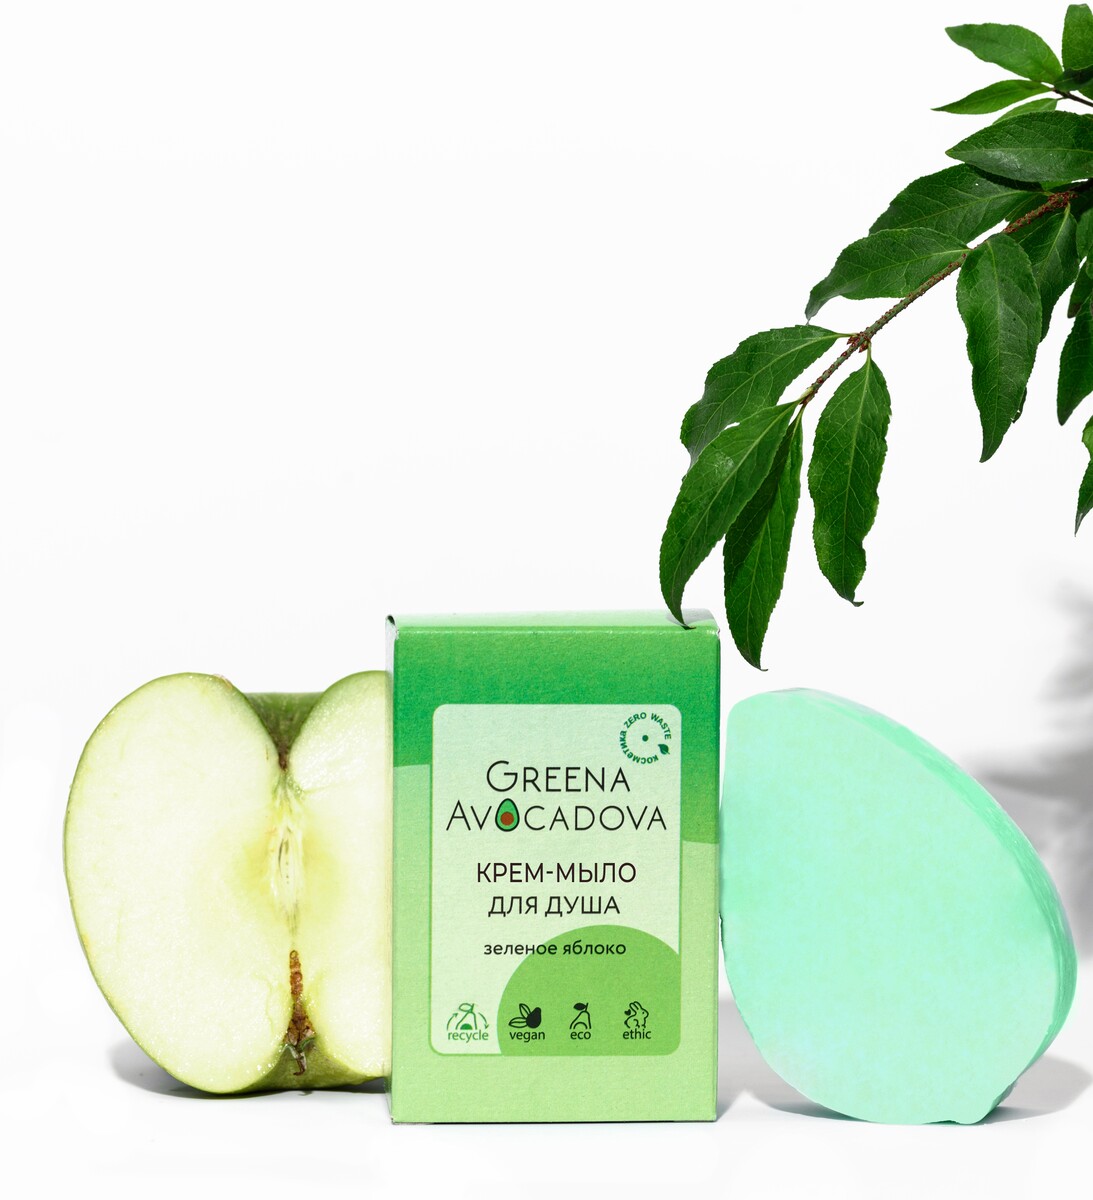 Крем-мыло для душа Зеленое яблоко Greena Avocadova —  крем-мыло .